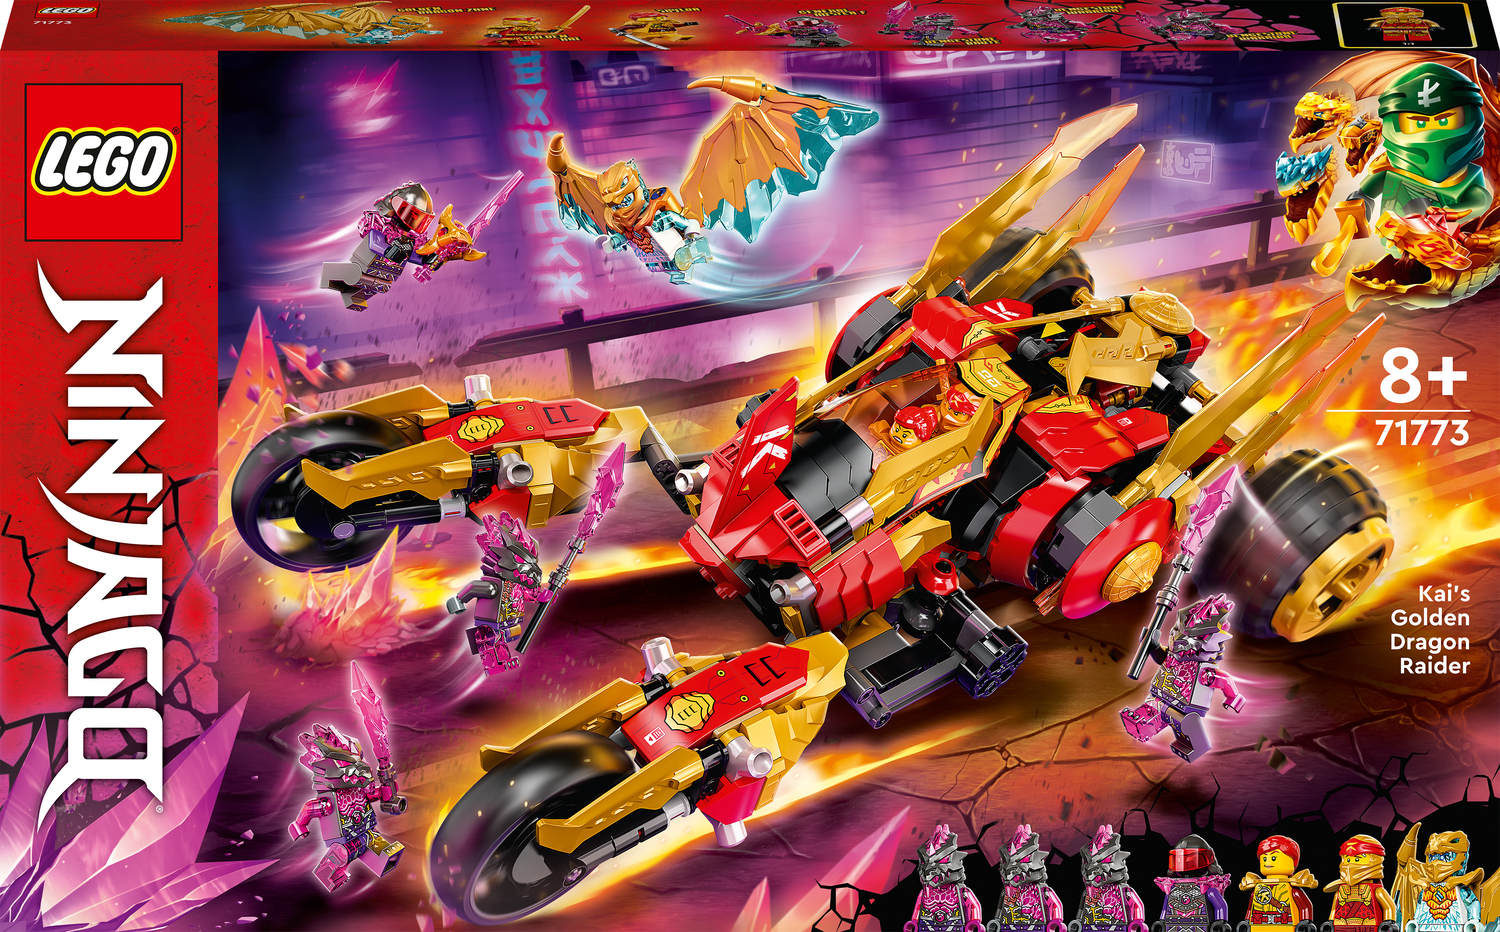 LEGO NINJAGO Kai's Golden Dragon Raider Set - Toys To Love